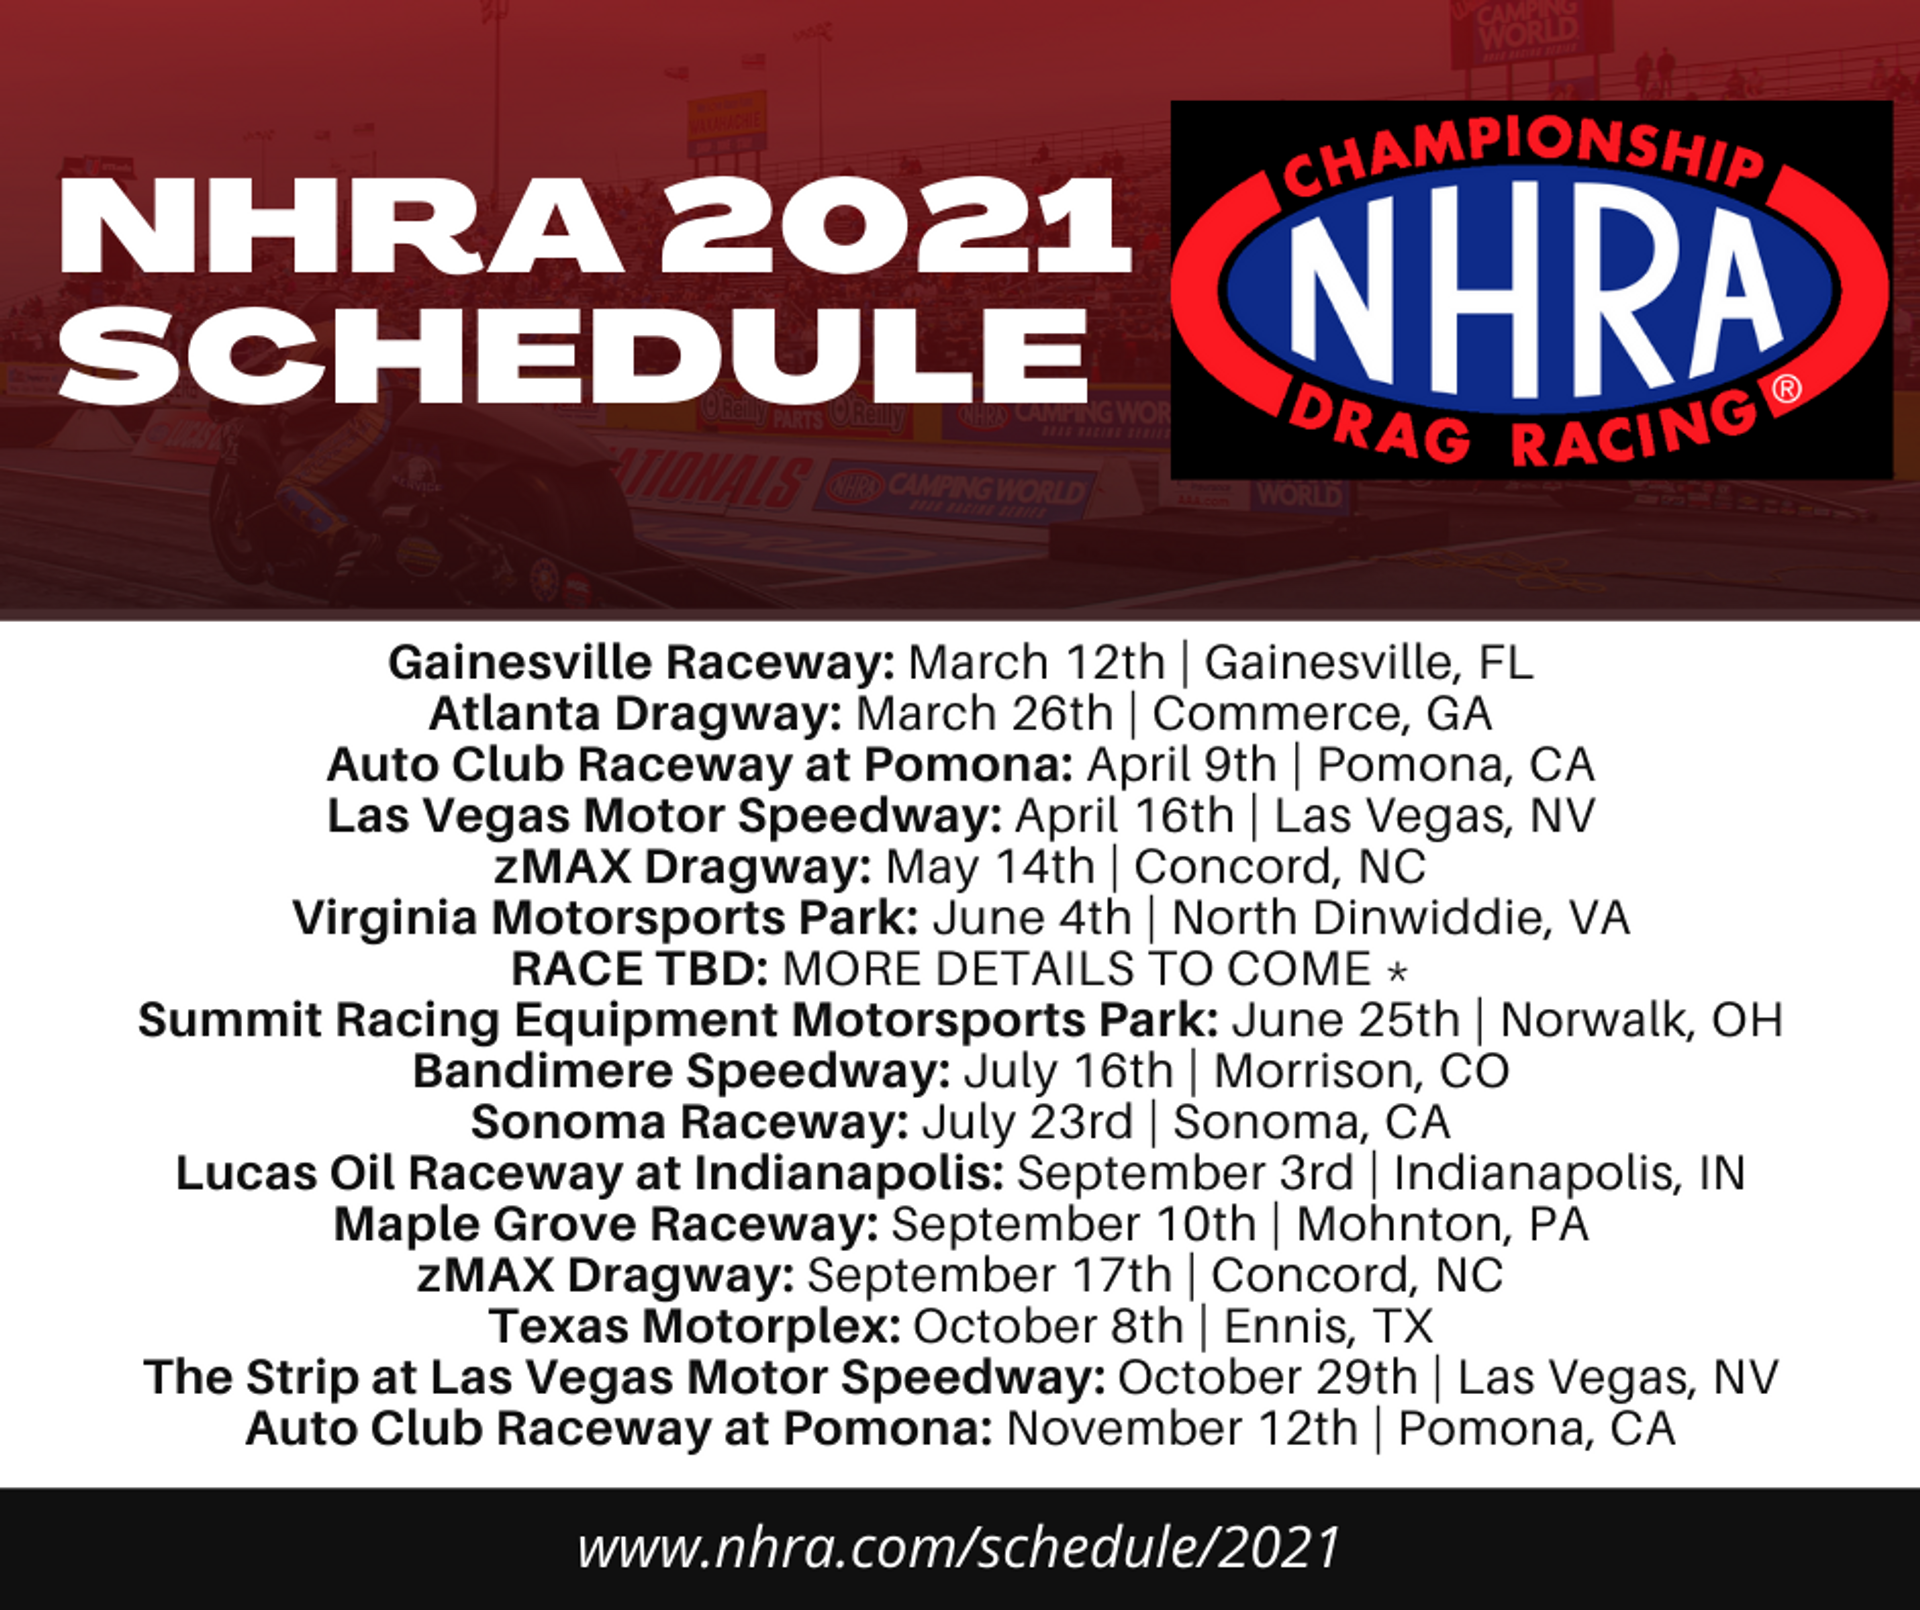 NHRA 2021 Racing Schedule - Shop HTP